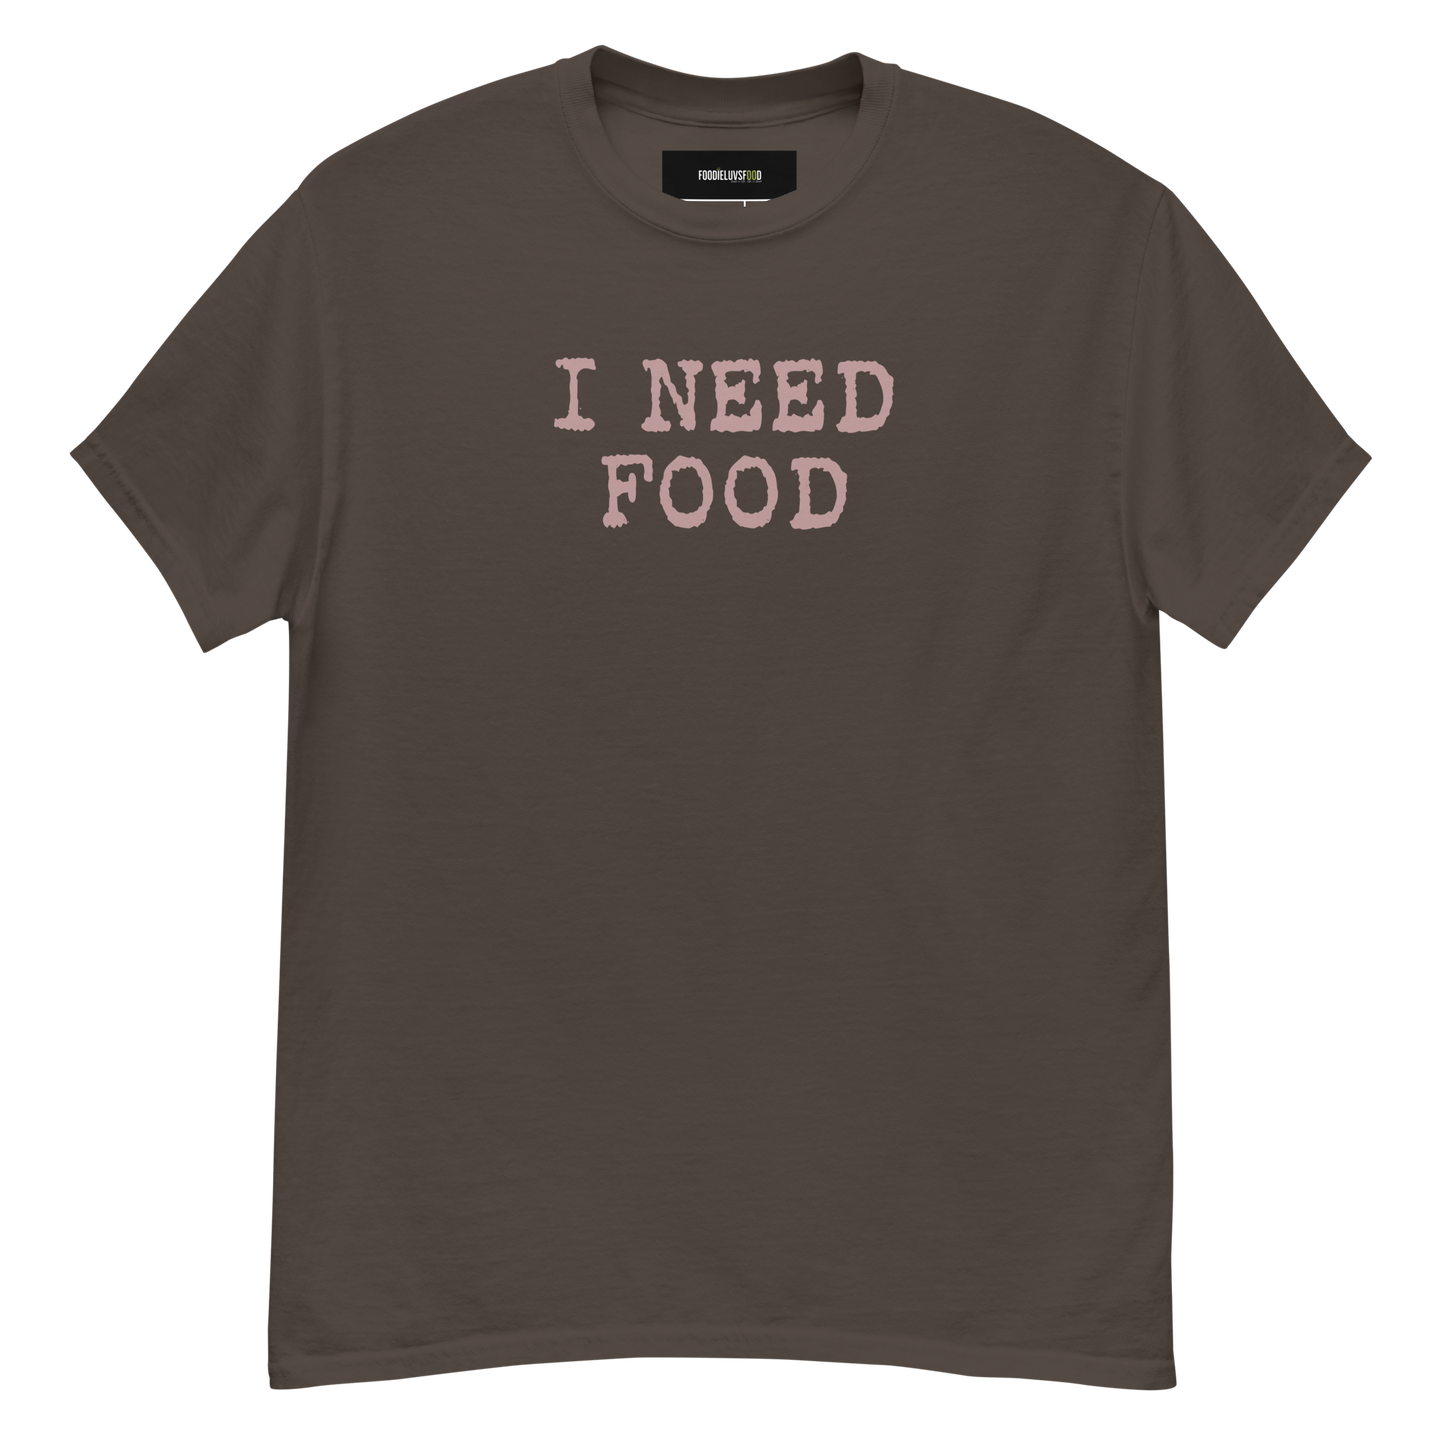 “I Need Food” Unisex Classic Food